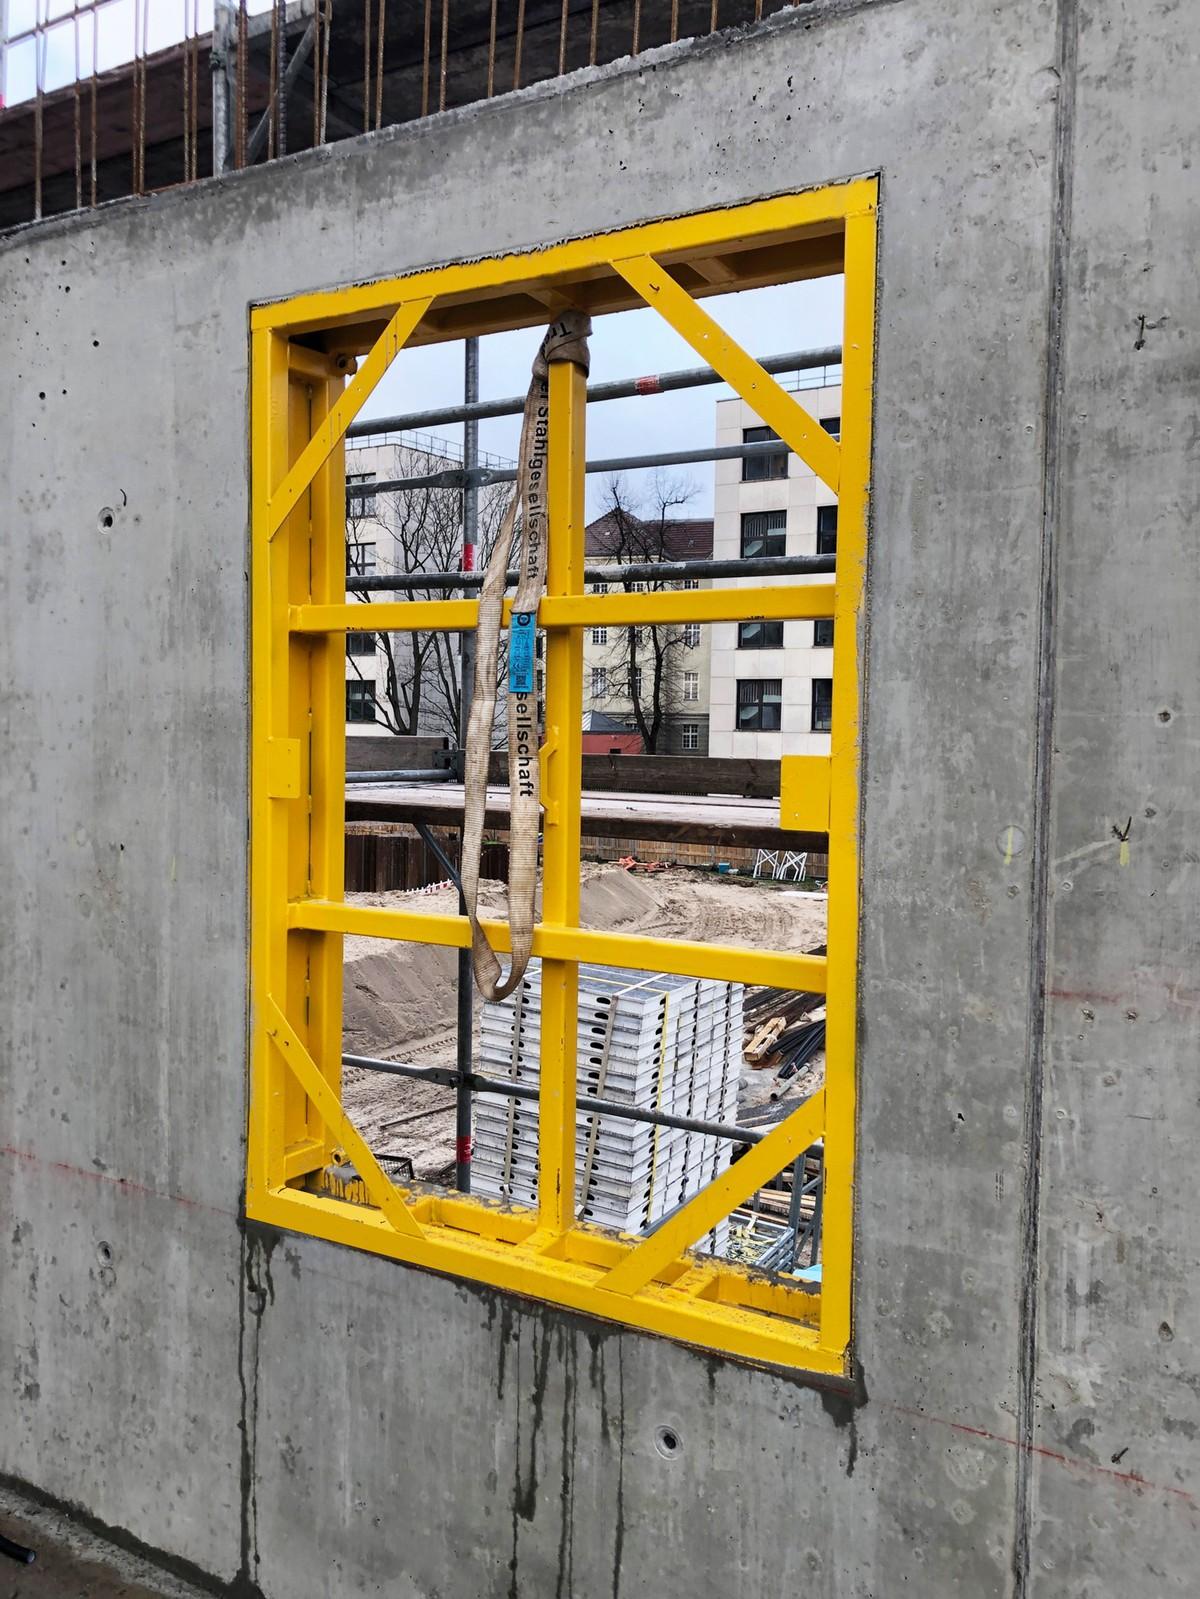 Fensterschalungen bieten höchste Wirtschaftlichkeit für die Baustelle, da sie vielfach wiederverwendbar sind und umständliche Holzarbeiten vermeiden. | Foto: Robusta-Gaukel